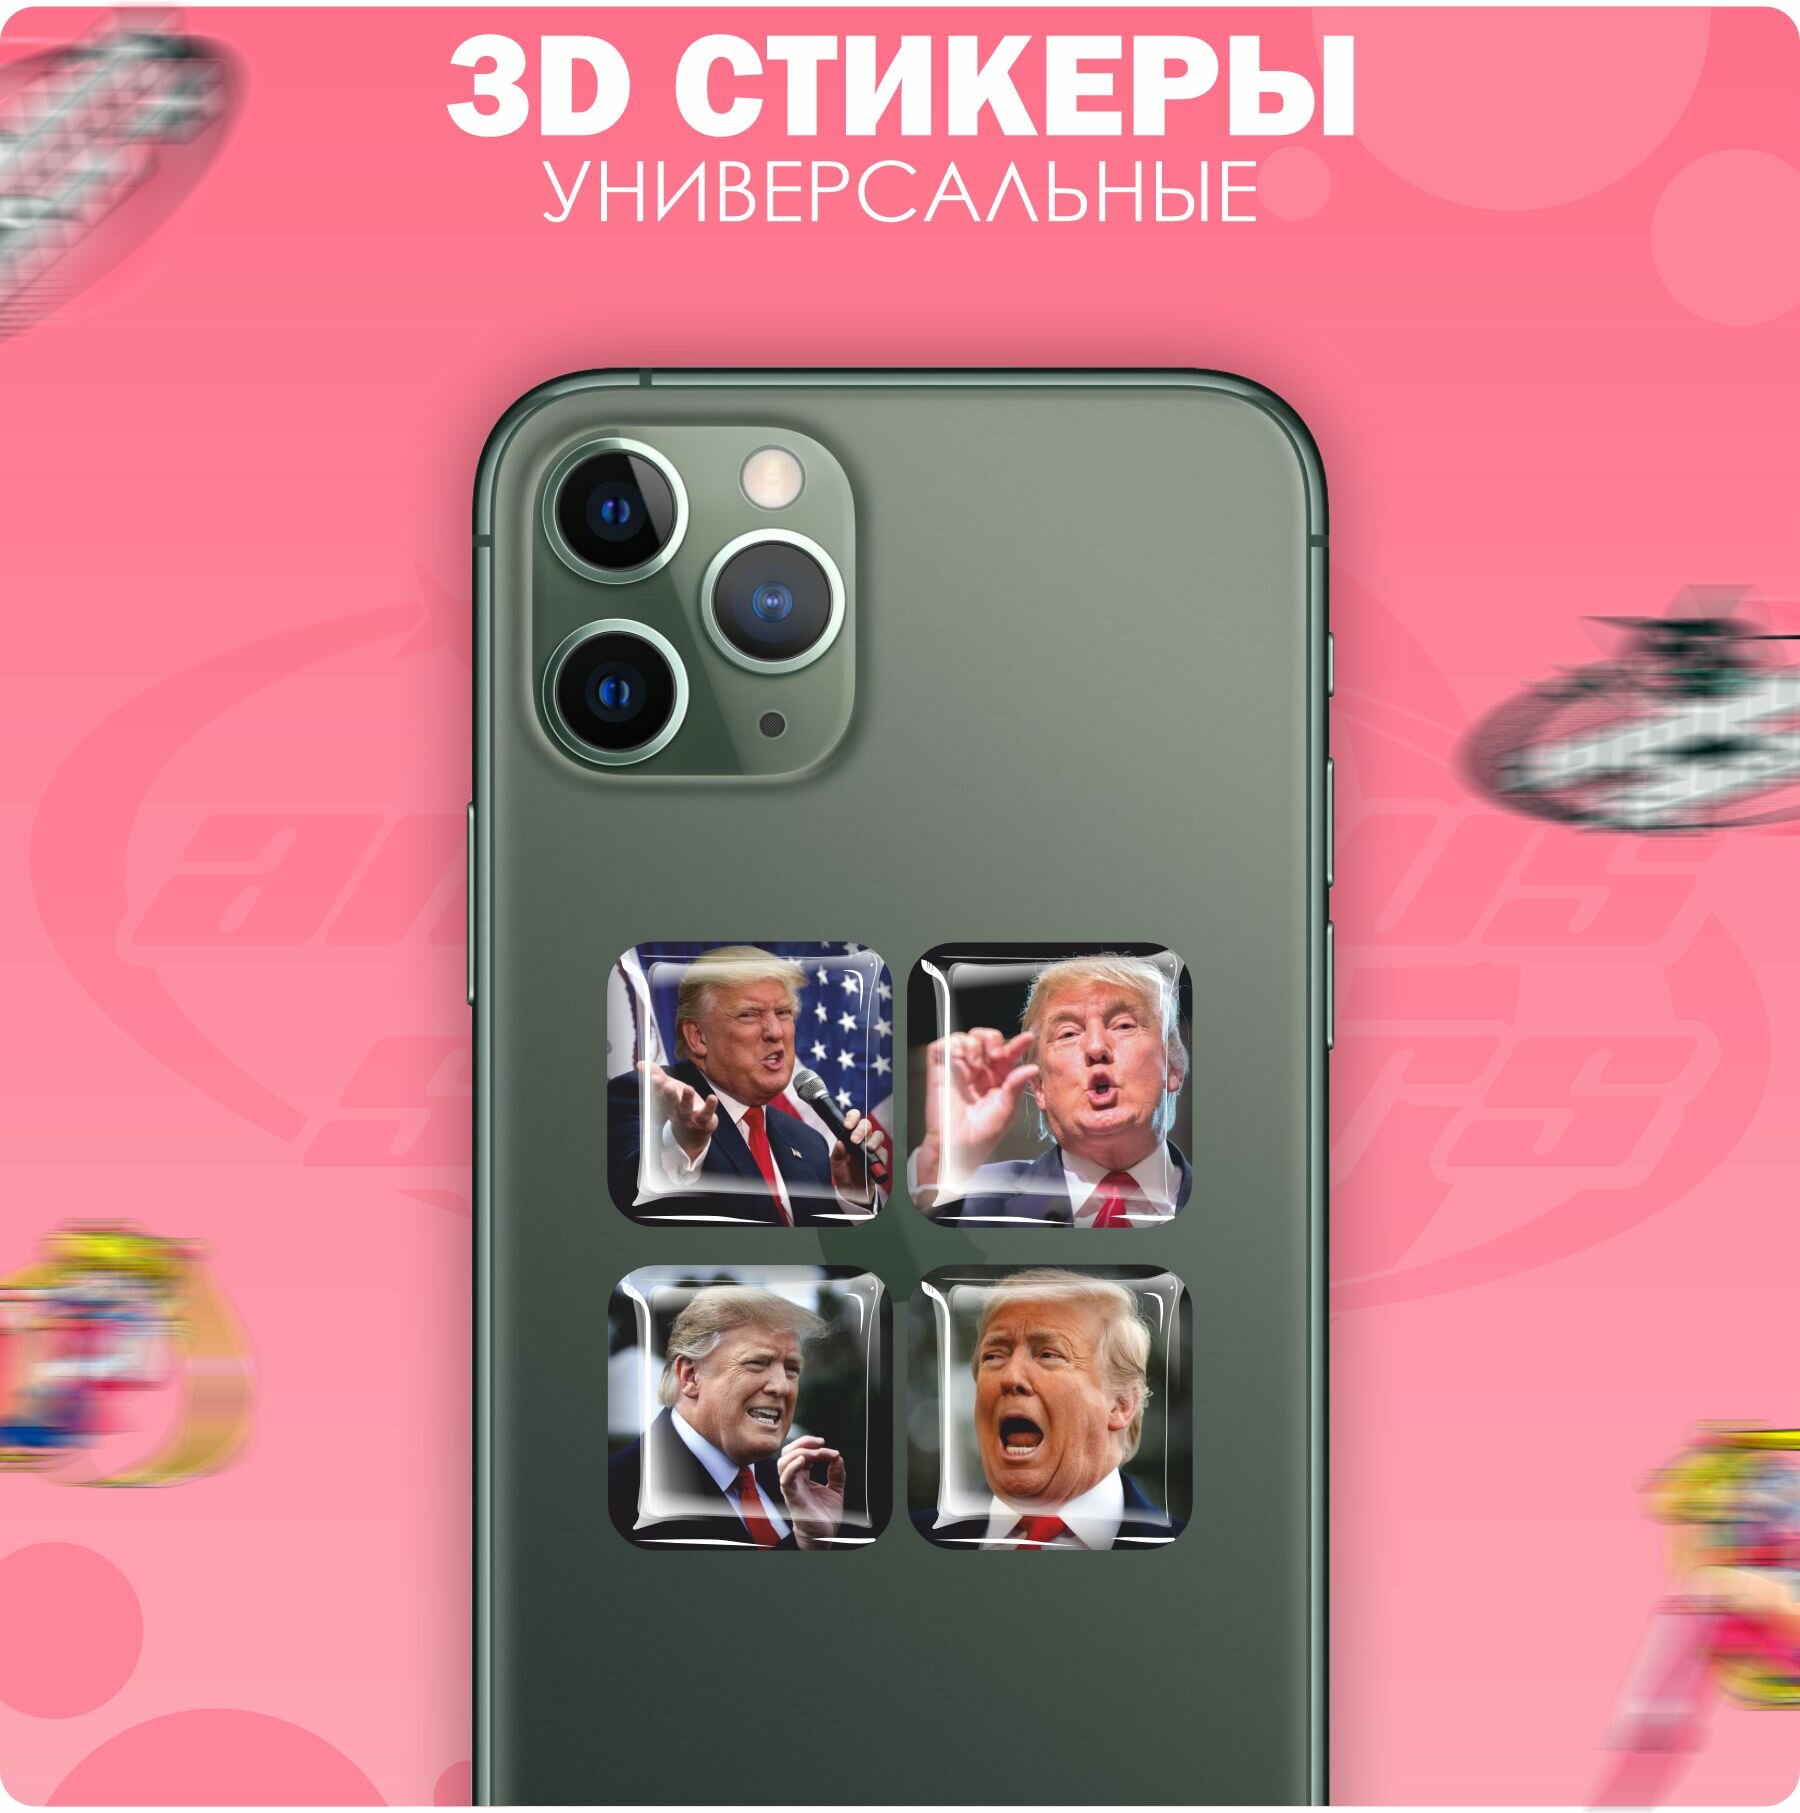 3D стикеры наклейки на телефон Дональд Трамп